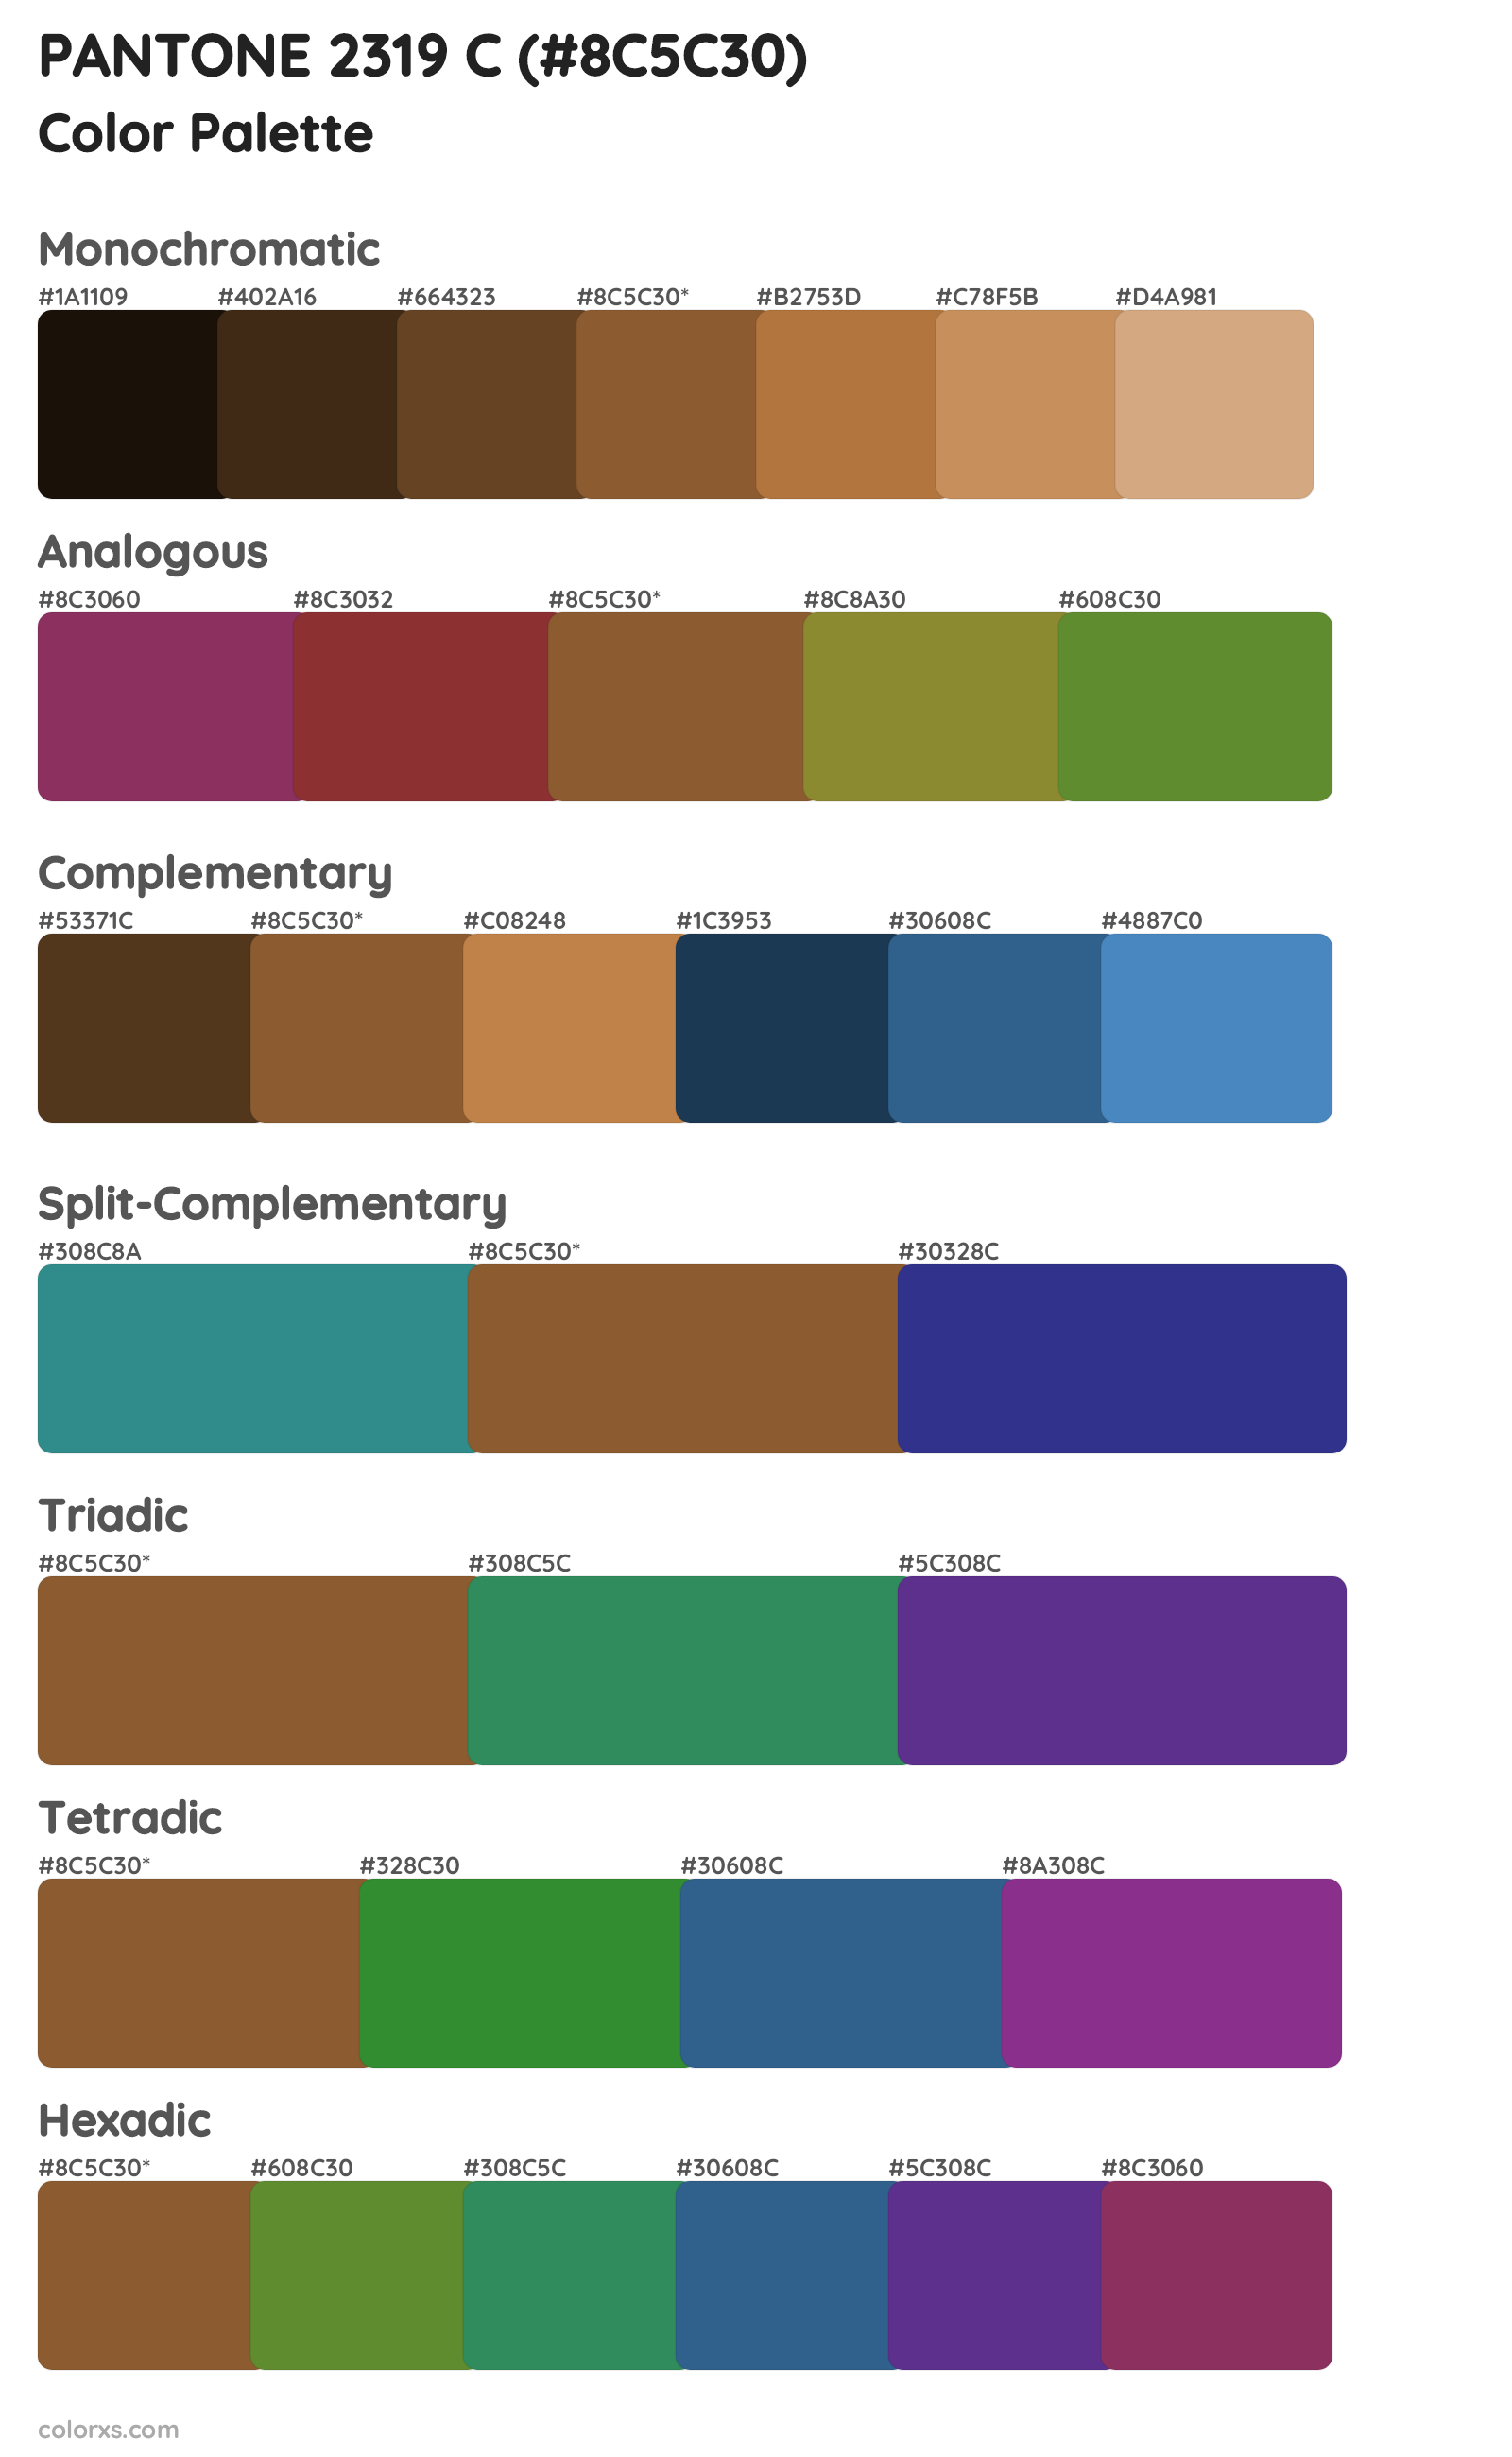 PANTONE 2319 C Color Scheme Palettes